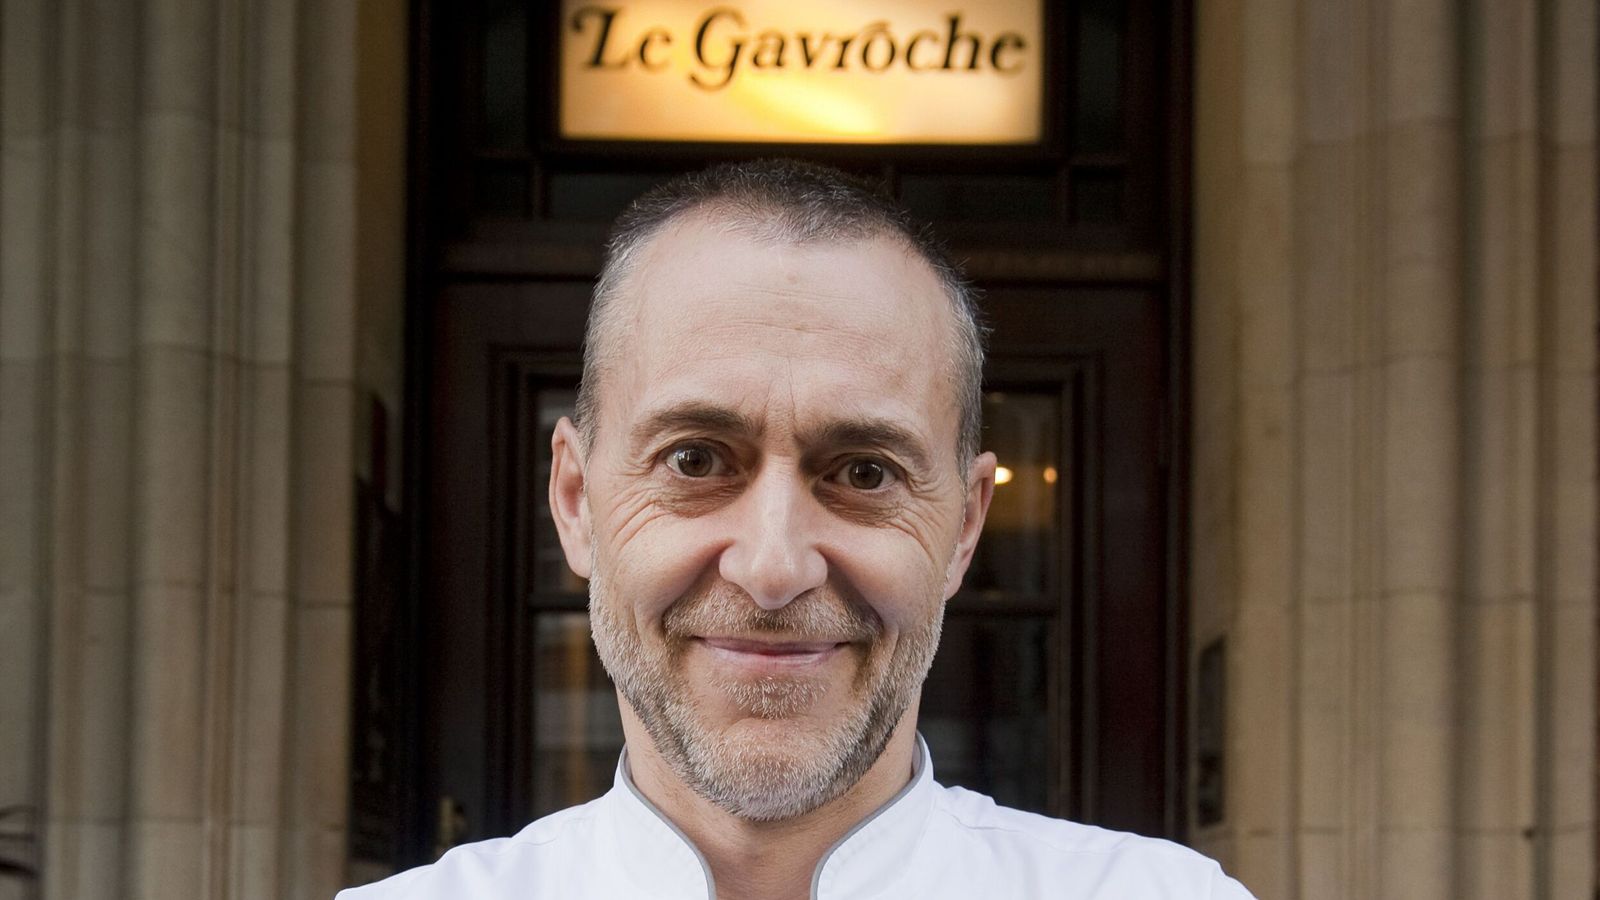 Le Gavroche: Michel Roux Jr ще затвори реномирания лондонски ресторант за „по-добър баланс между работата и личния живот“